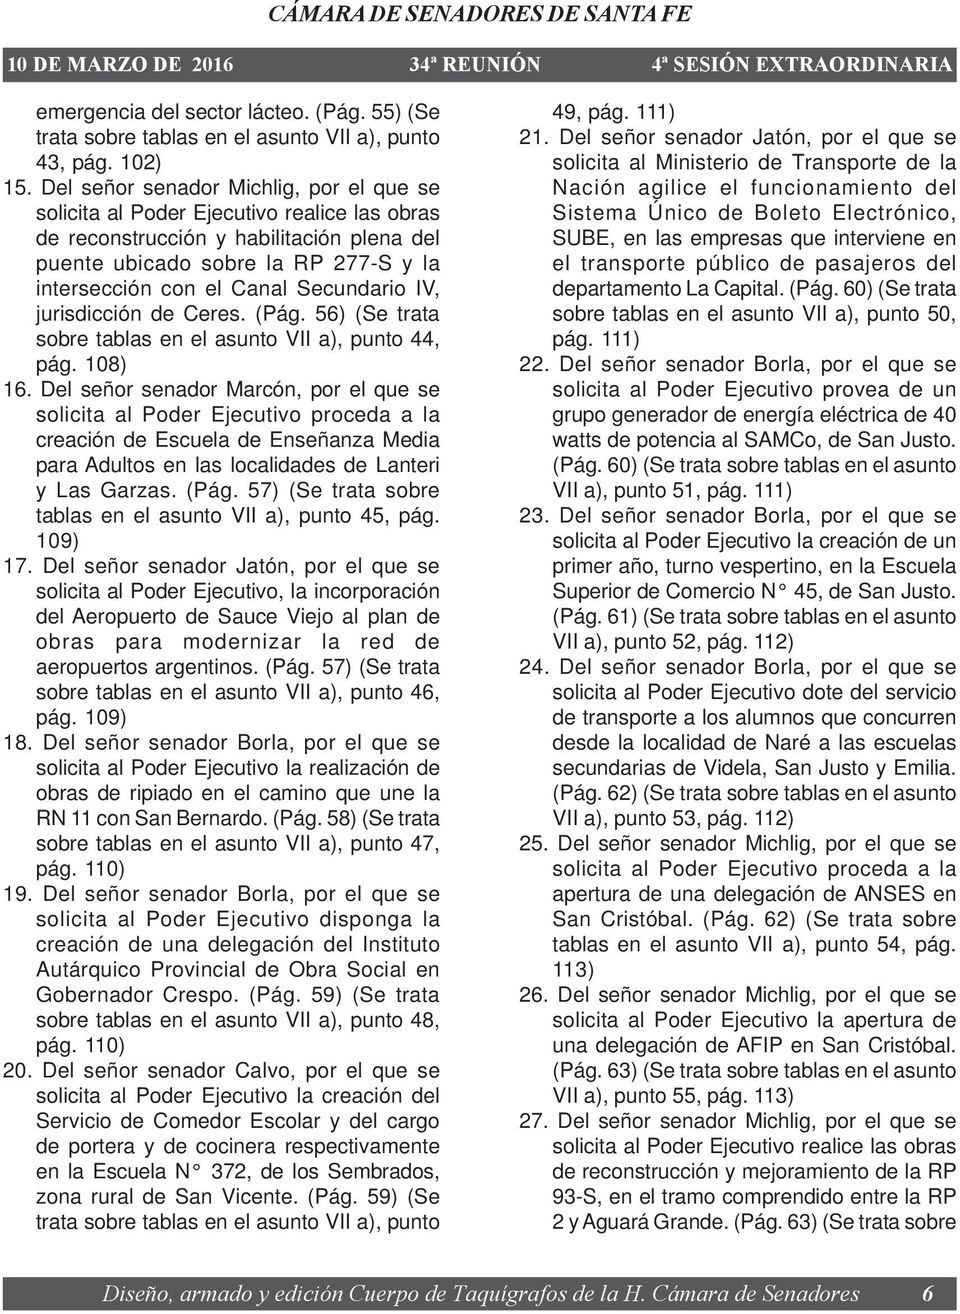 Secundario IV, jurisdicción de Ceres. (Pág. 56) (Se trata sobre tablas en el asunto VII a), punto 44, pág. 108) 16.